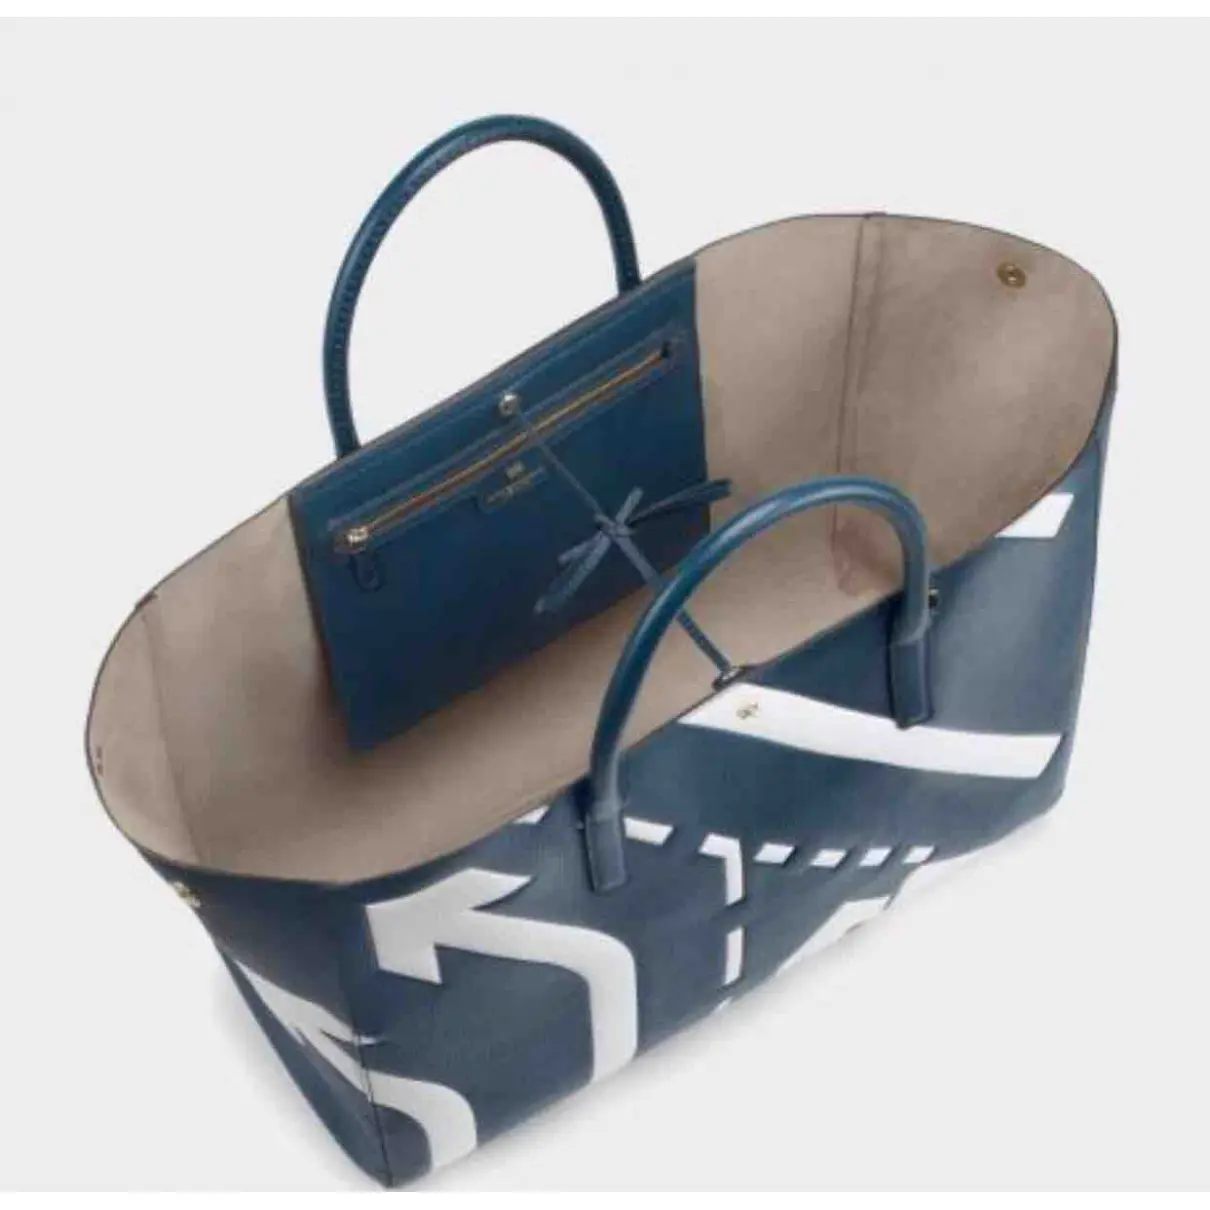 Ebury Maxi  leather handbag Anya Hindmarch